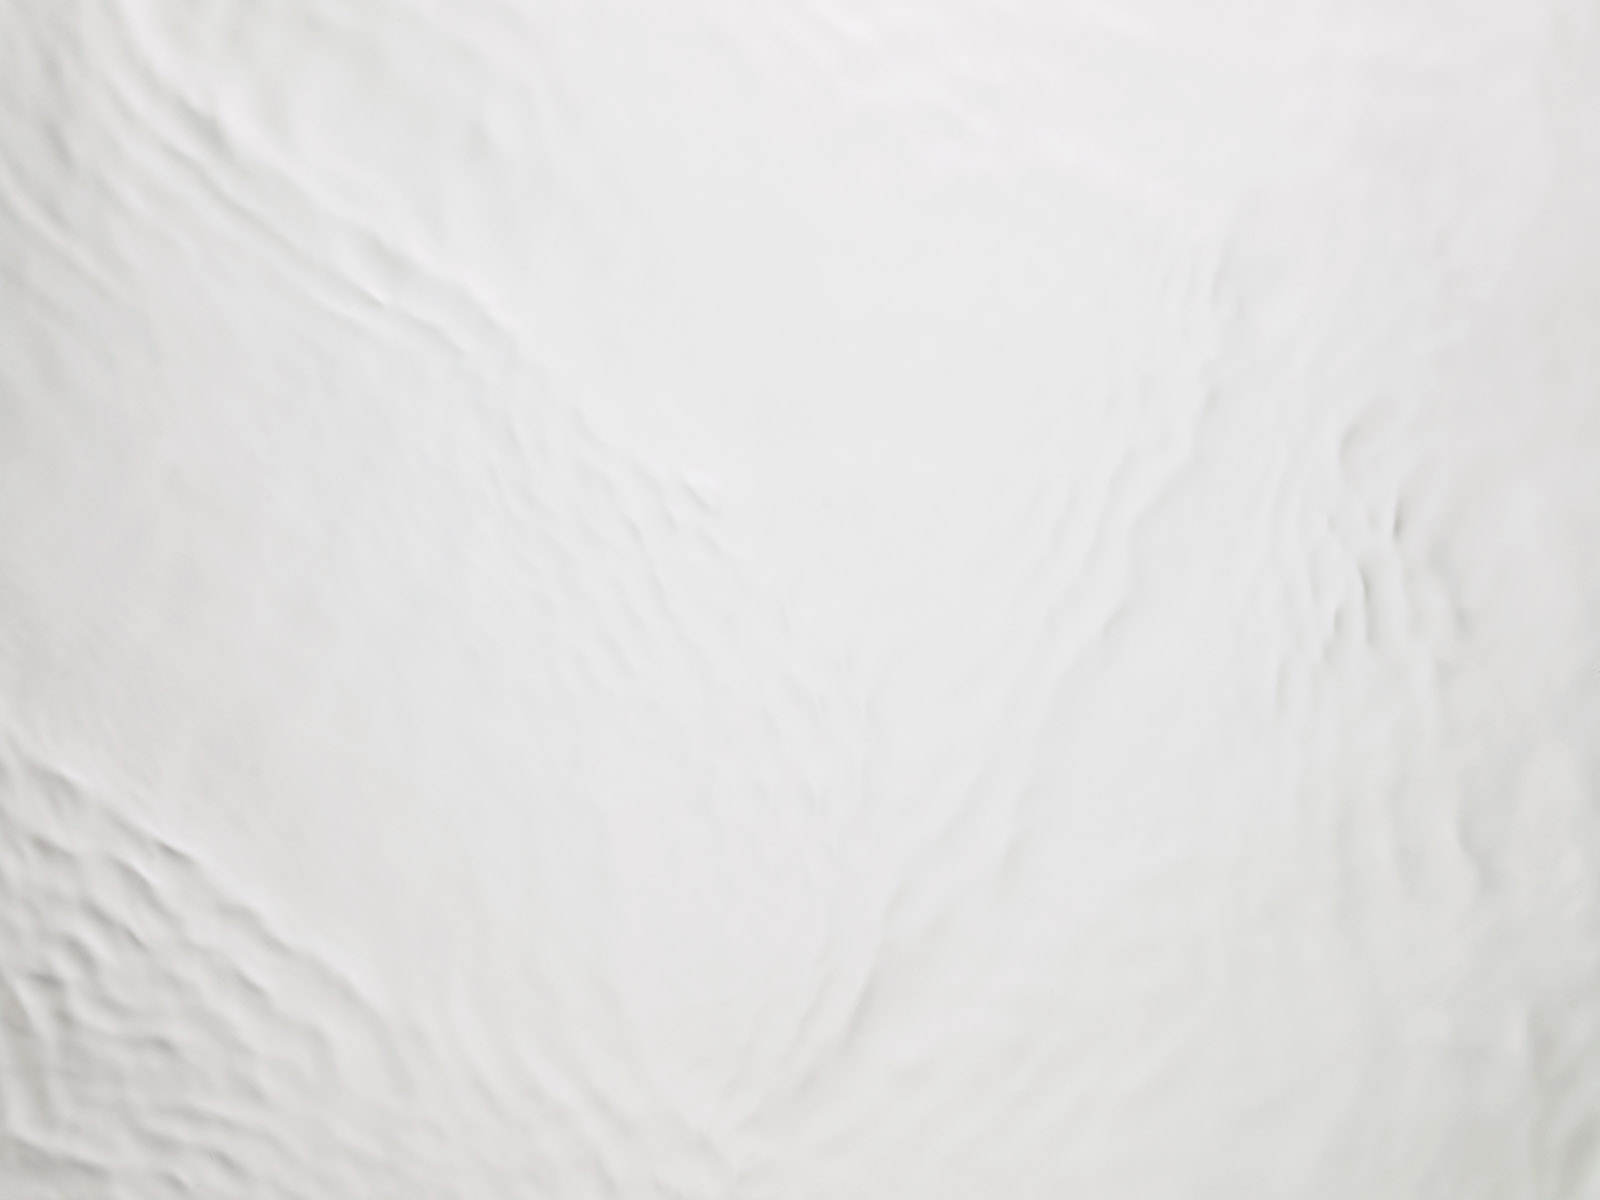 壁纸1600x1200水的韵律 23 13壁纸 水的韵律壁纸 水的韵律图片 水的韵律素材 炫彩壁纸 炫彩图库 炫彩图片素材桌面壁纸